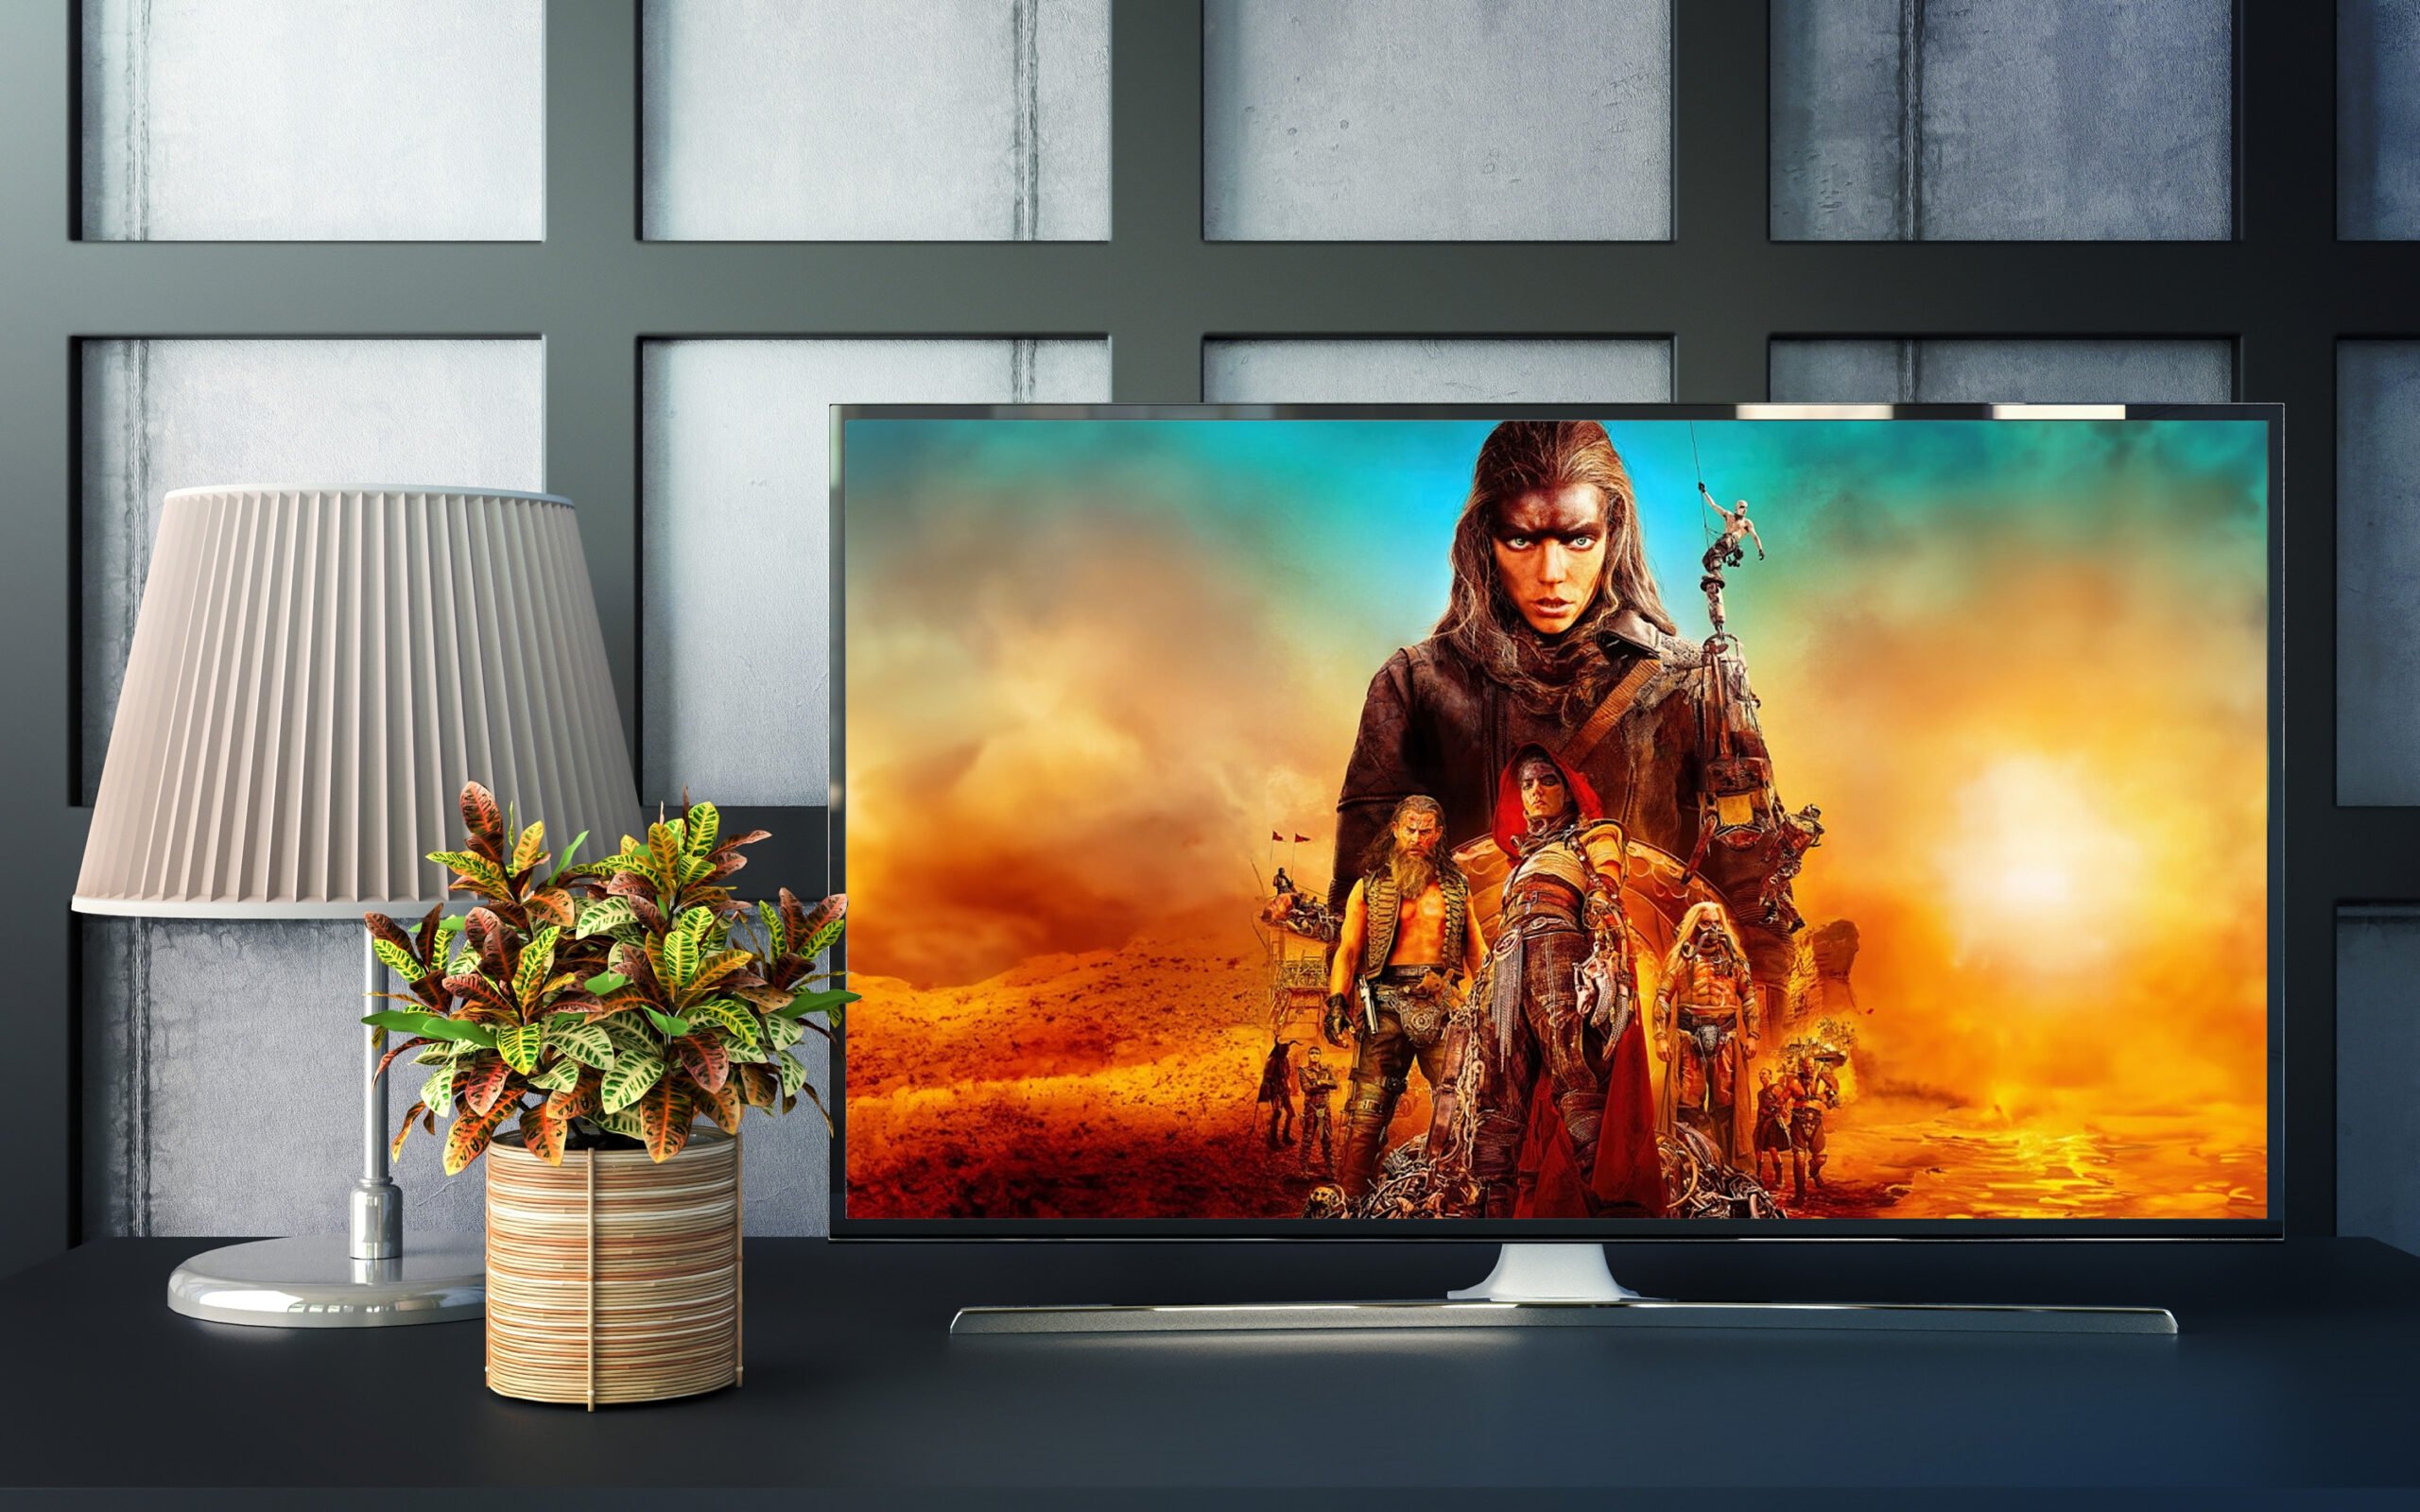 Telewizor na stole, obok lampka i doniczka z rośliną; na ekranie scena z filmu akcji w postapokaliptycznym świecie.